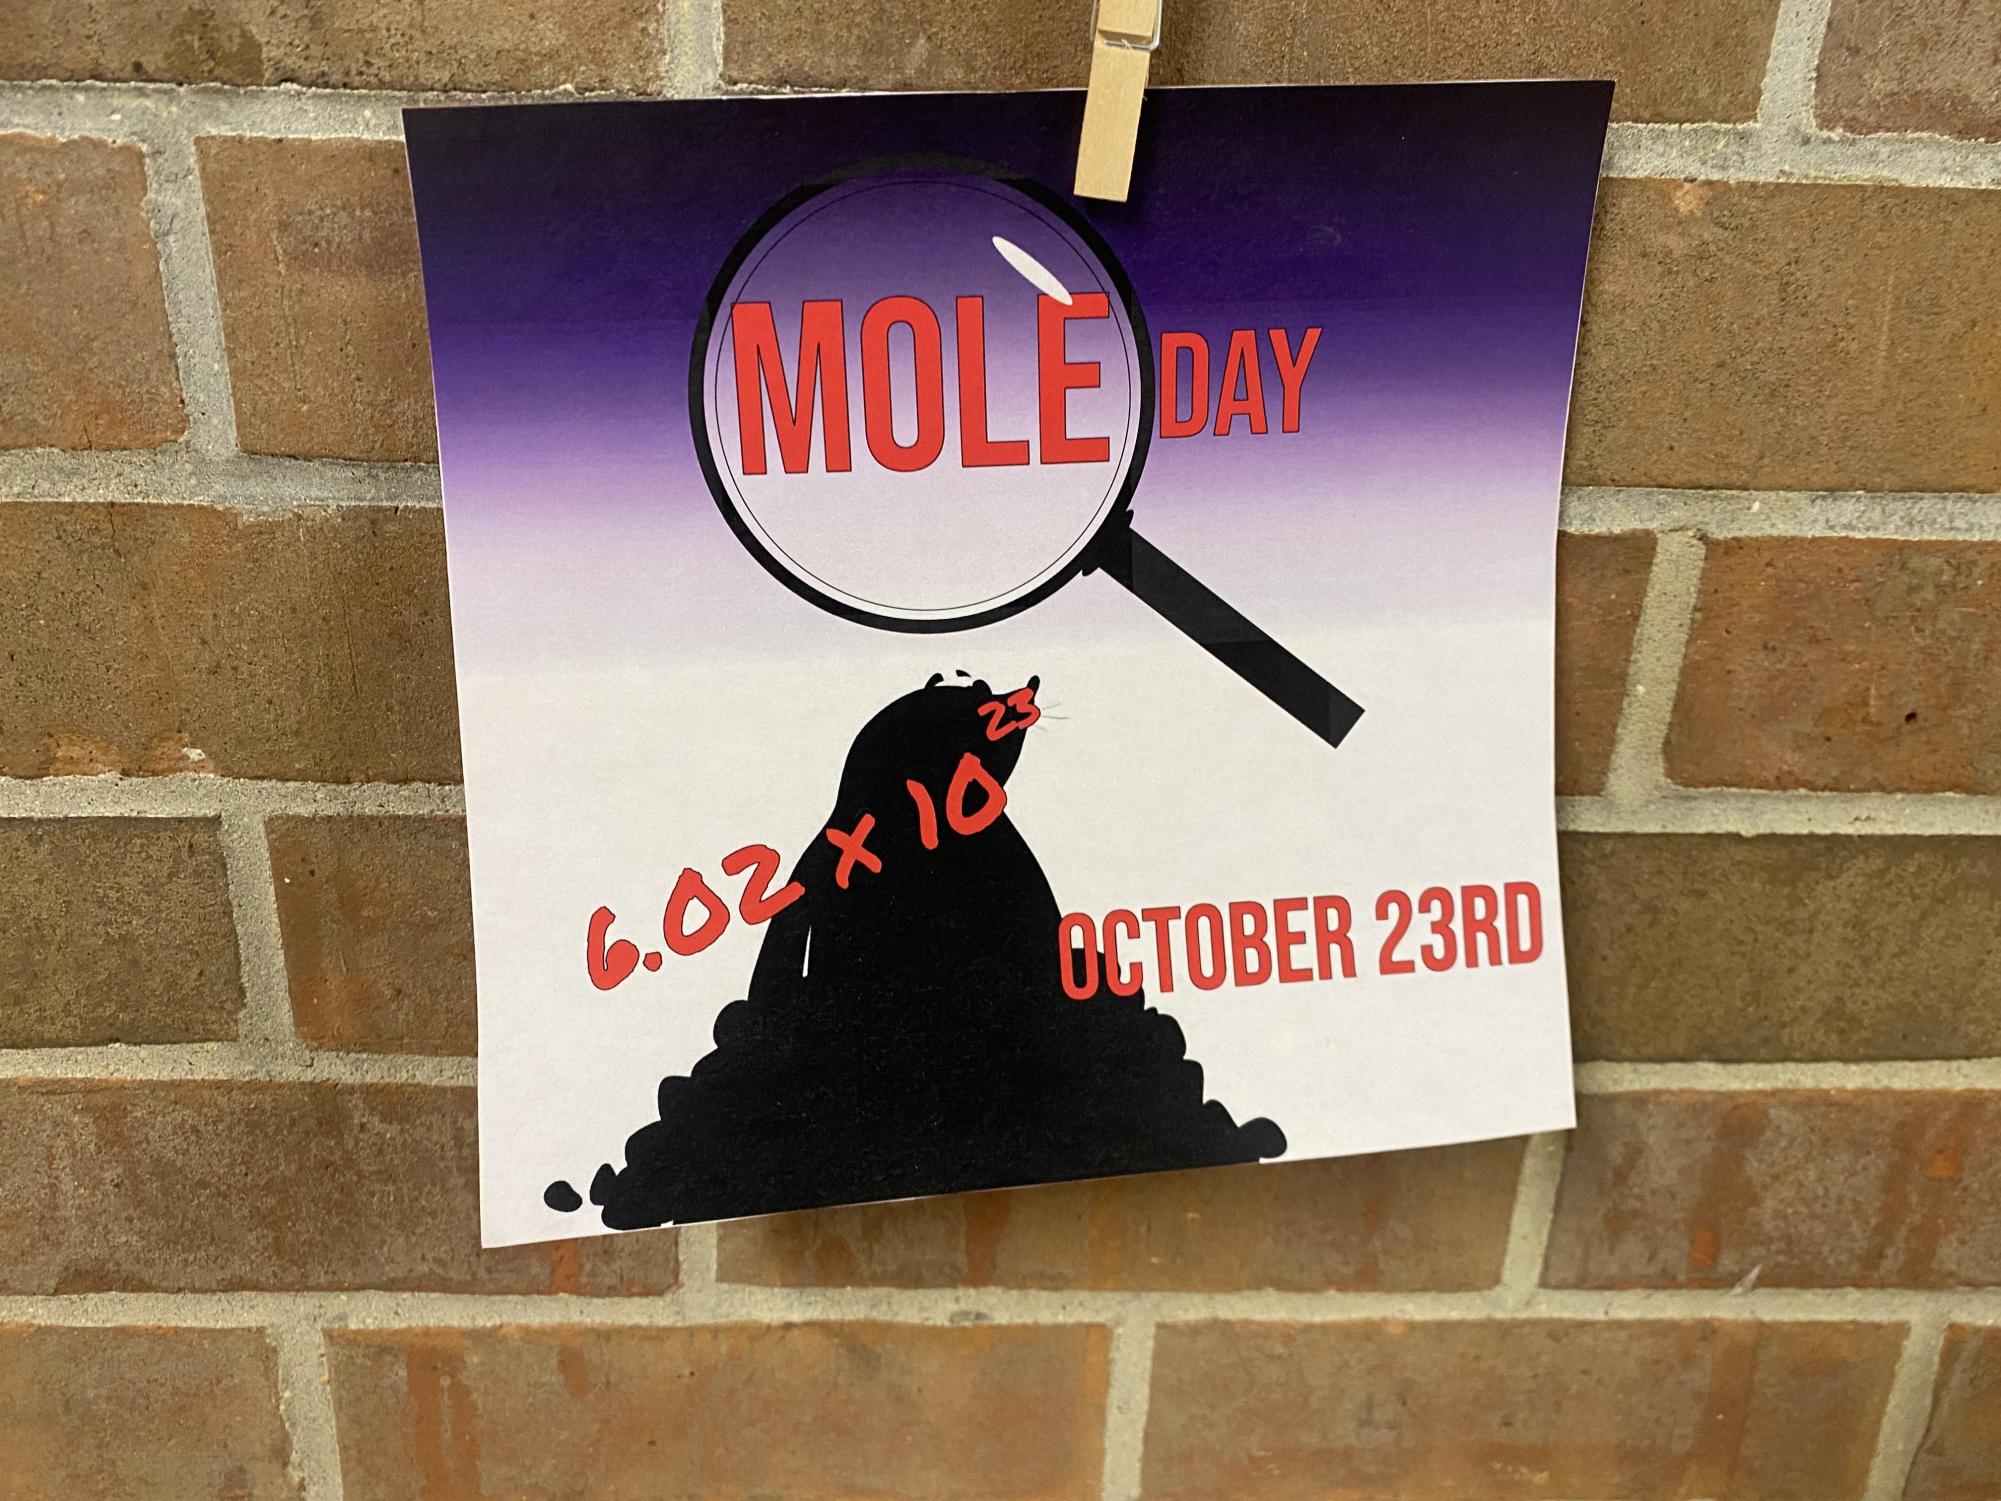 Chemistry+students+celebrate+Mole+Day%21